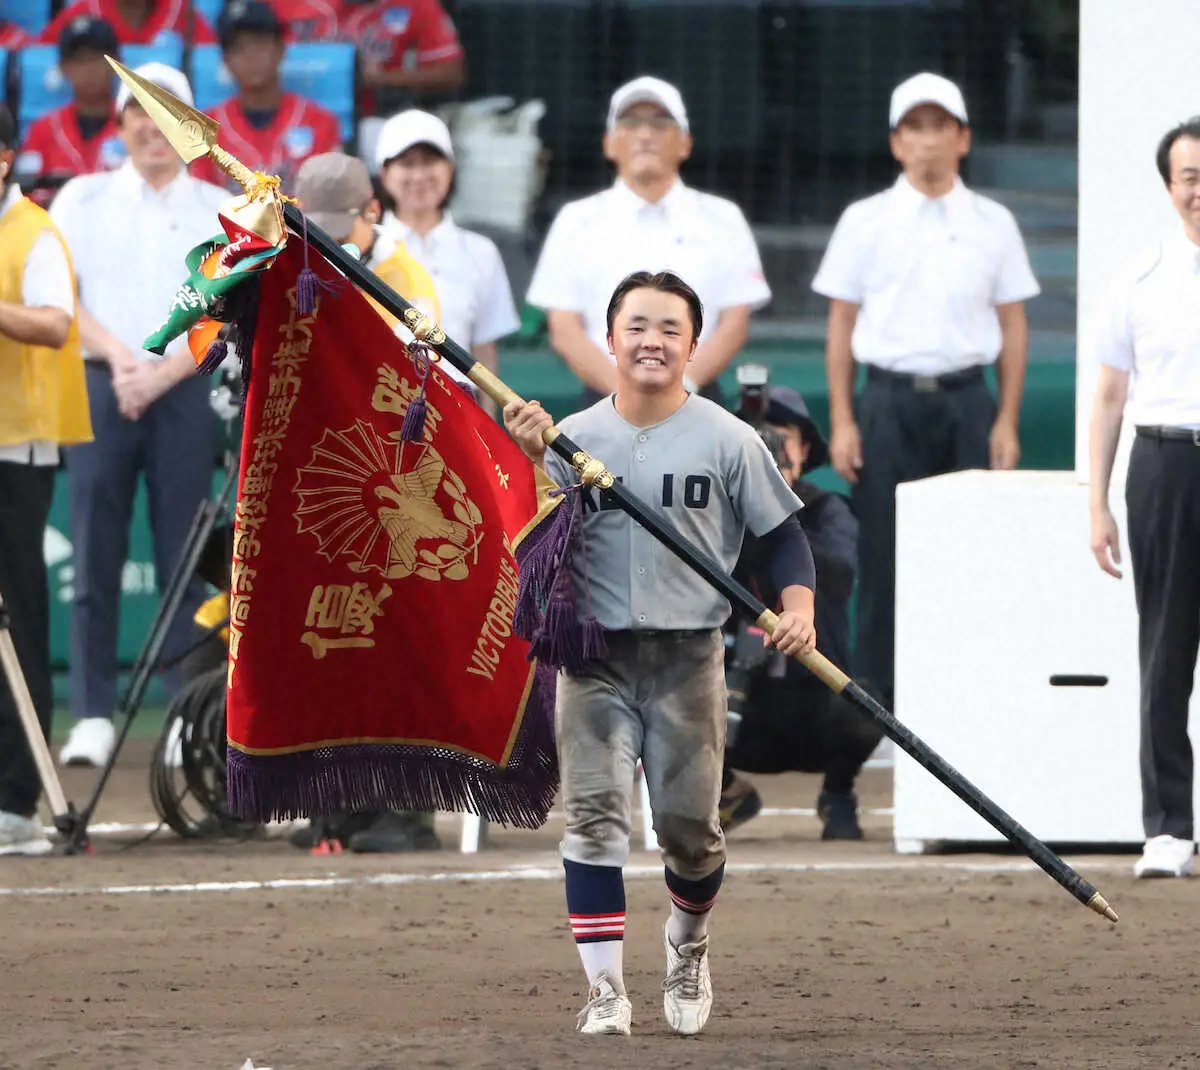 【甲子園】慶応主将「日本一、高校野球の常識を変えたいとか…笑われることも。辛い思い報われた」感無量